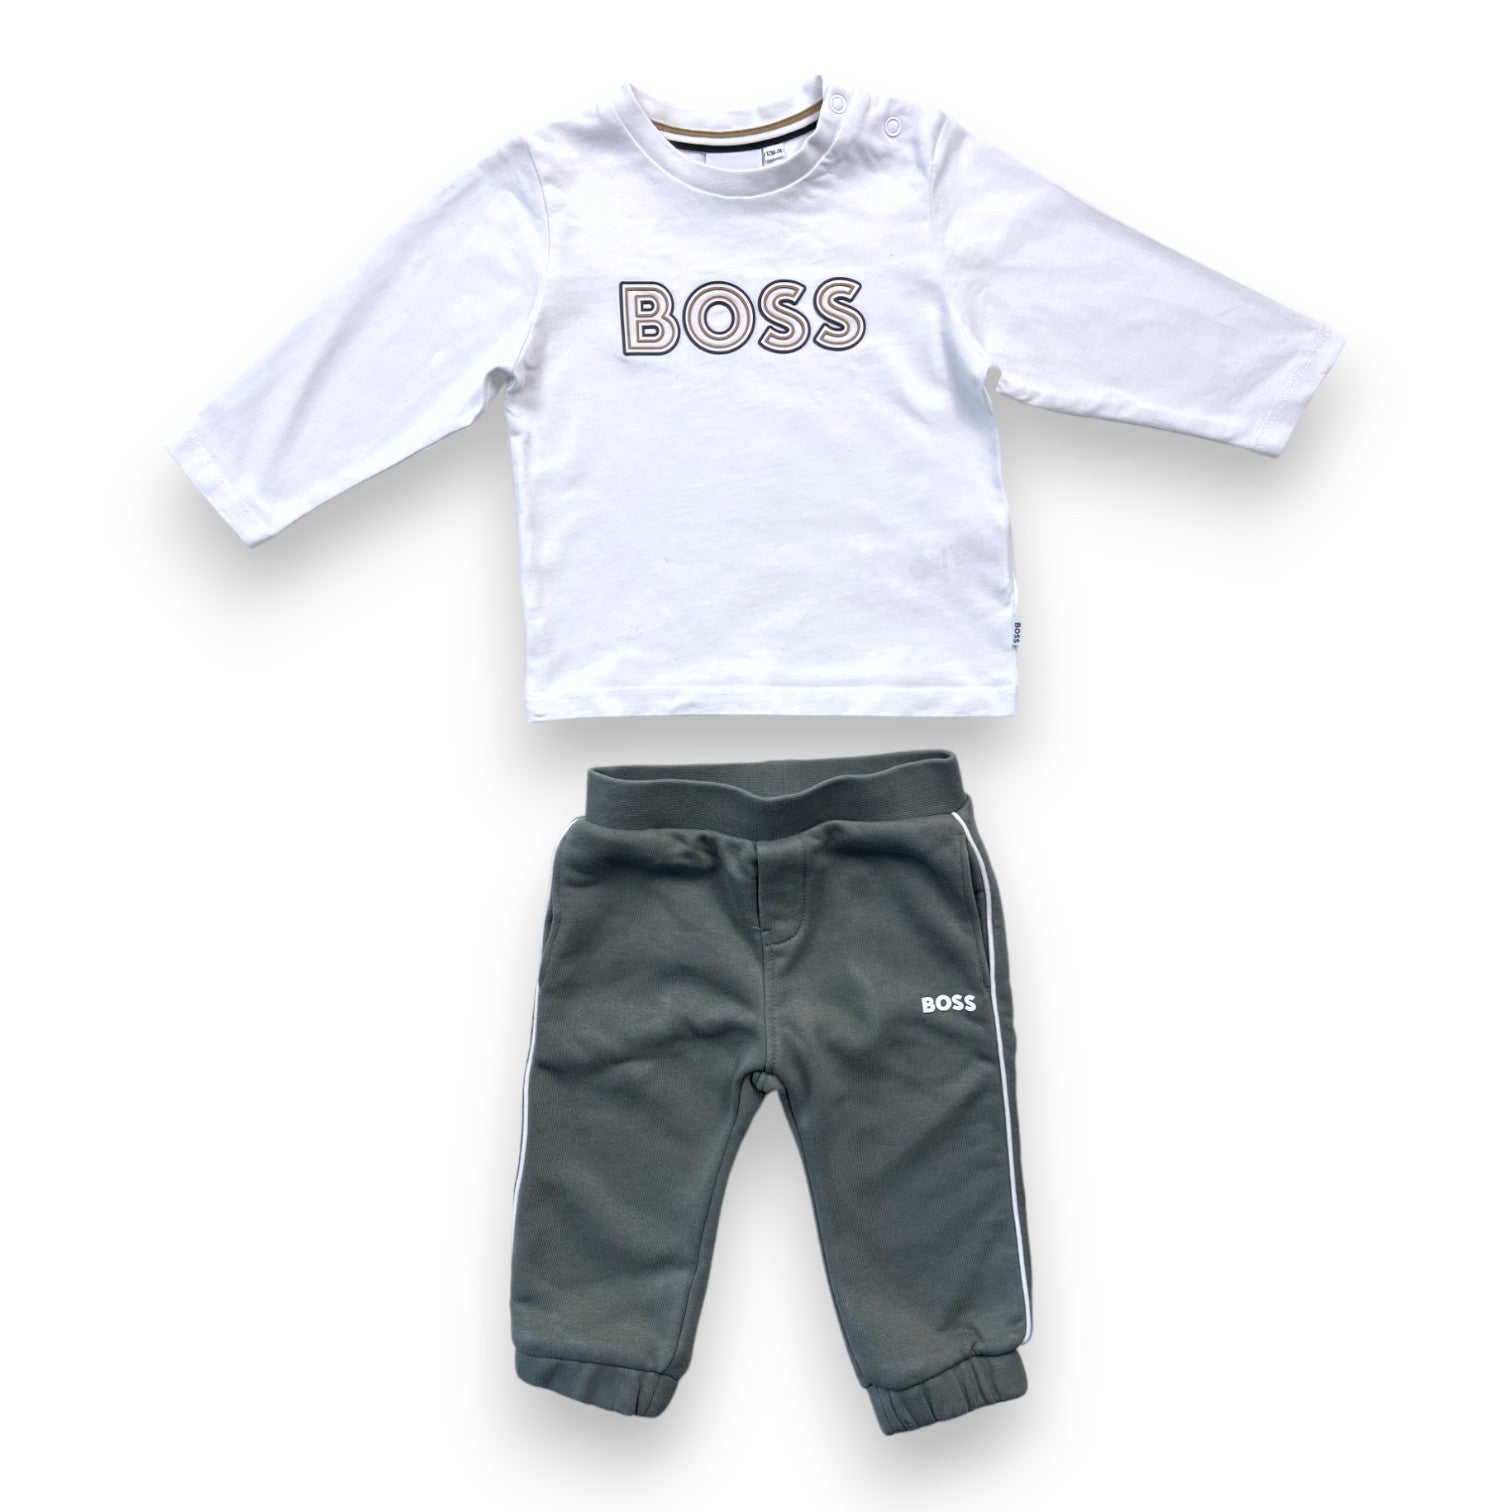 BOSS - Ensemble t shirt manches longues et survêtement kaki - 12 mois